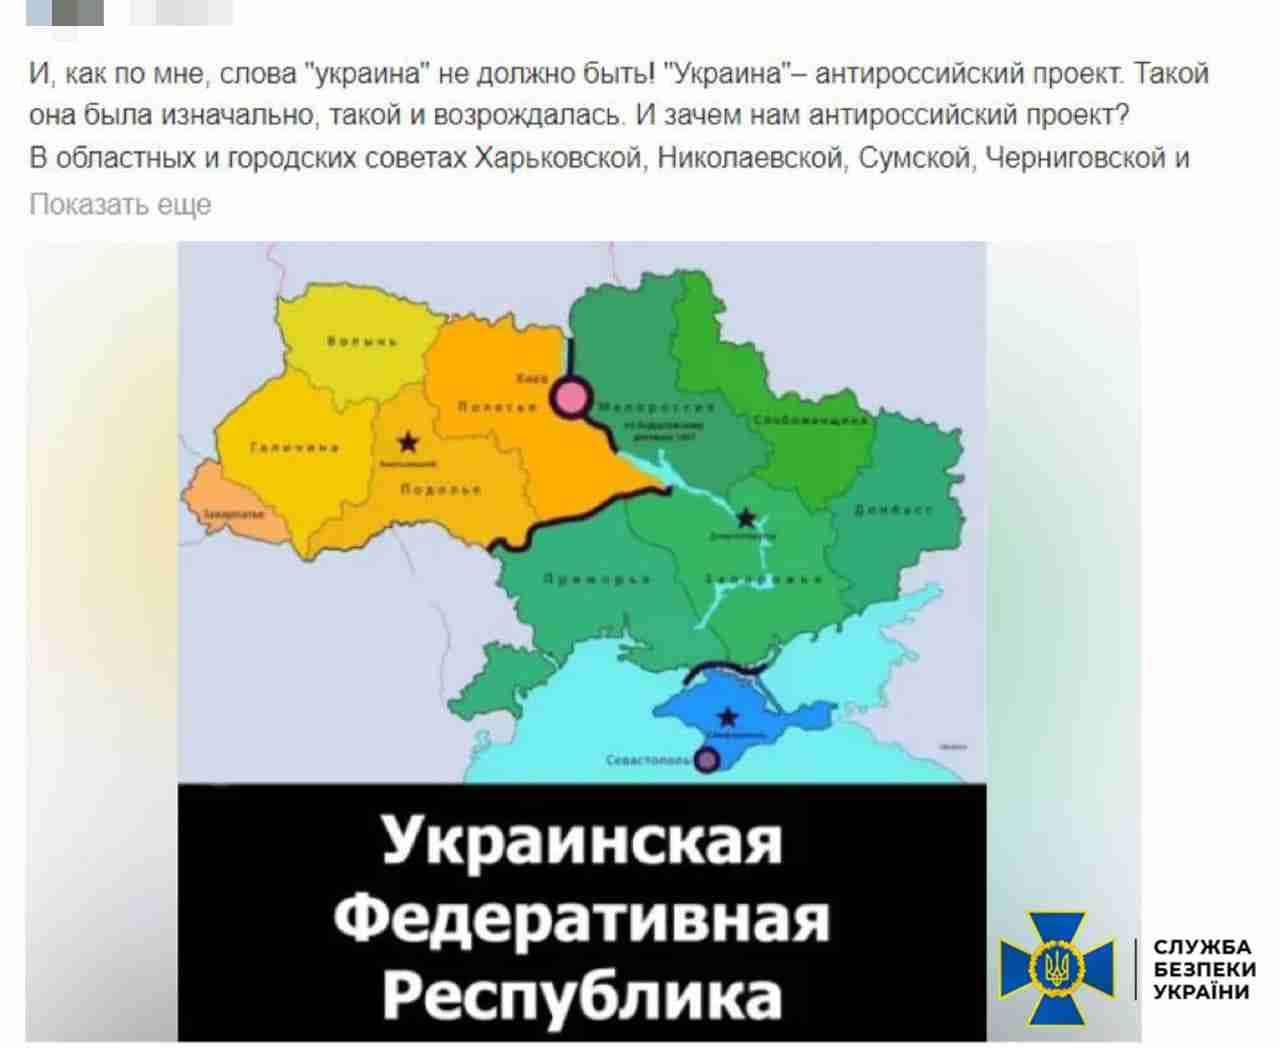 Ще однин прихильник путінського режиму: затримано львів'янина за антиукраїнські дописи (ФОТО)